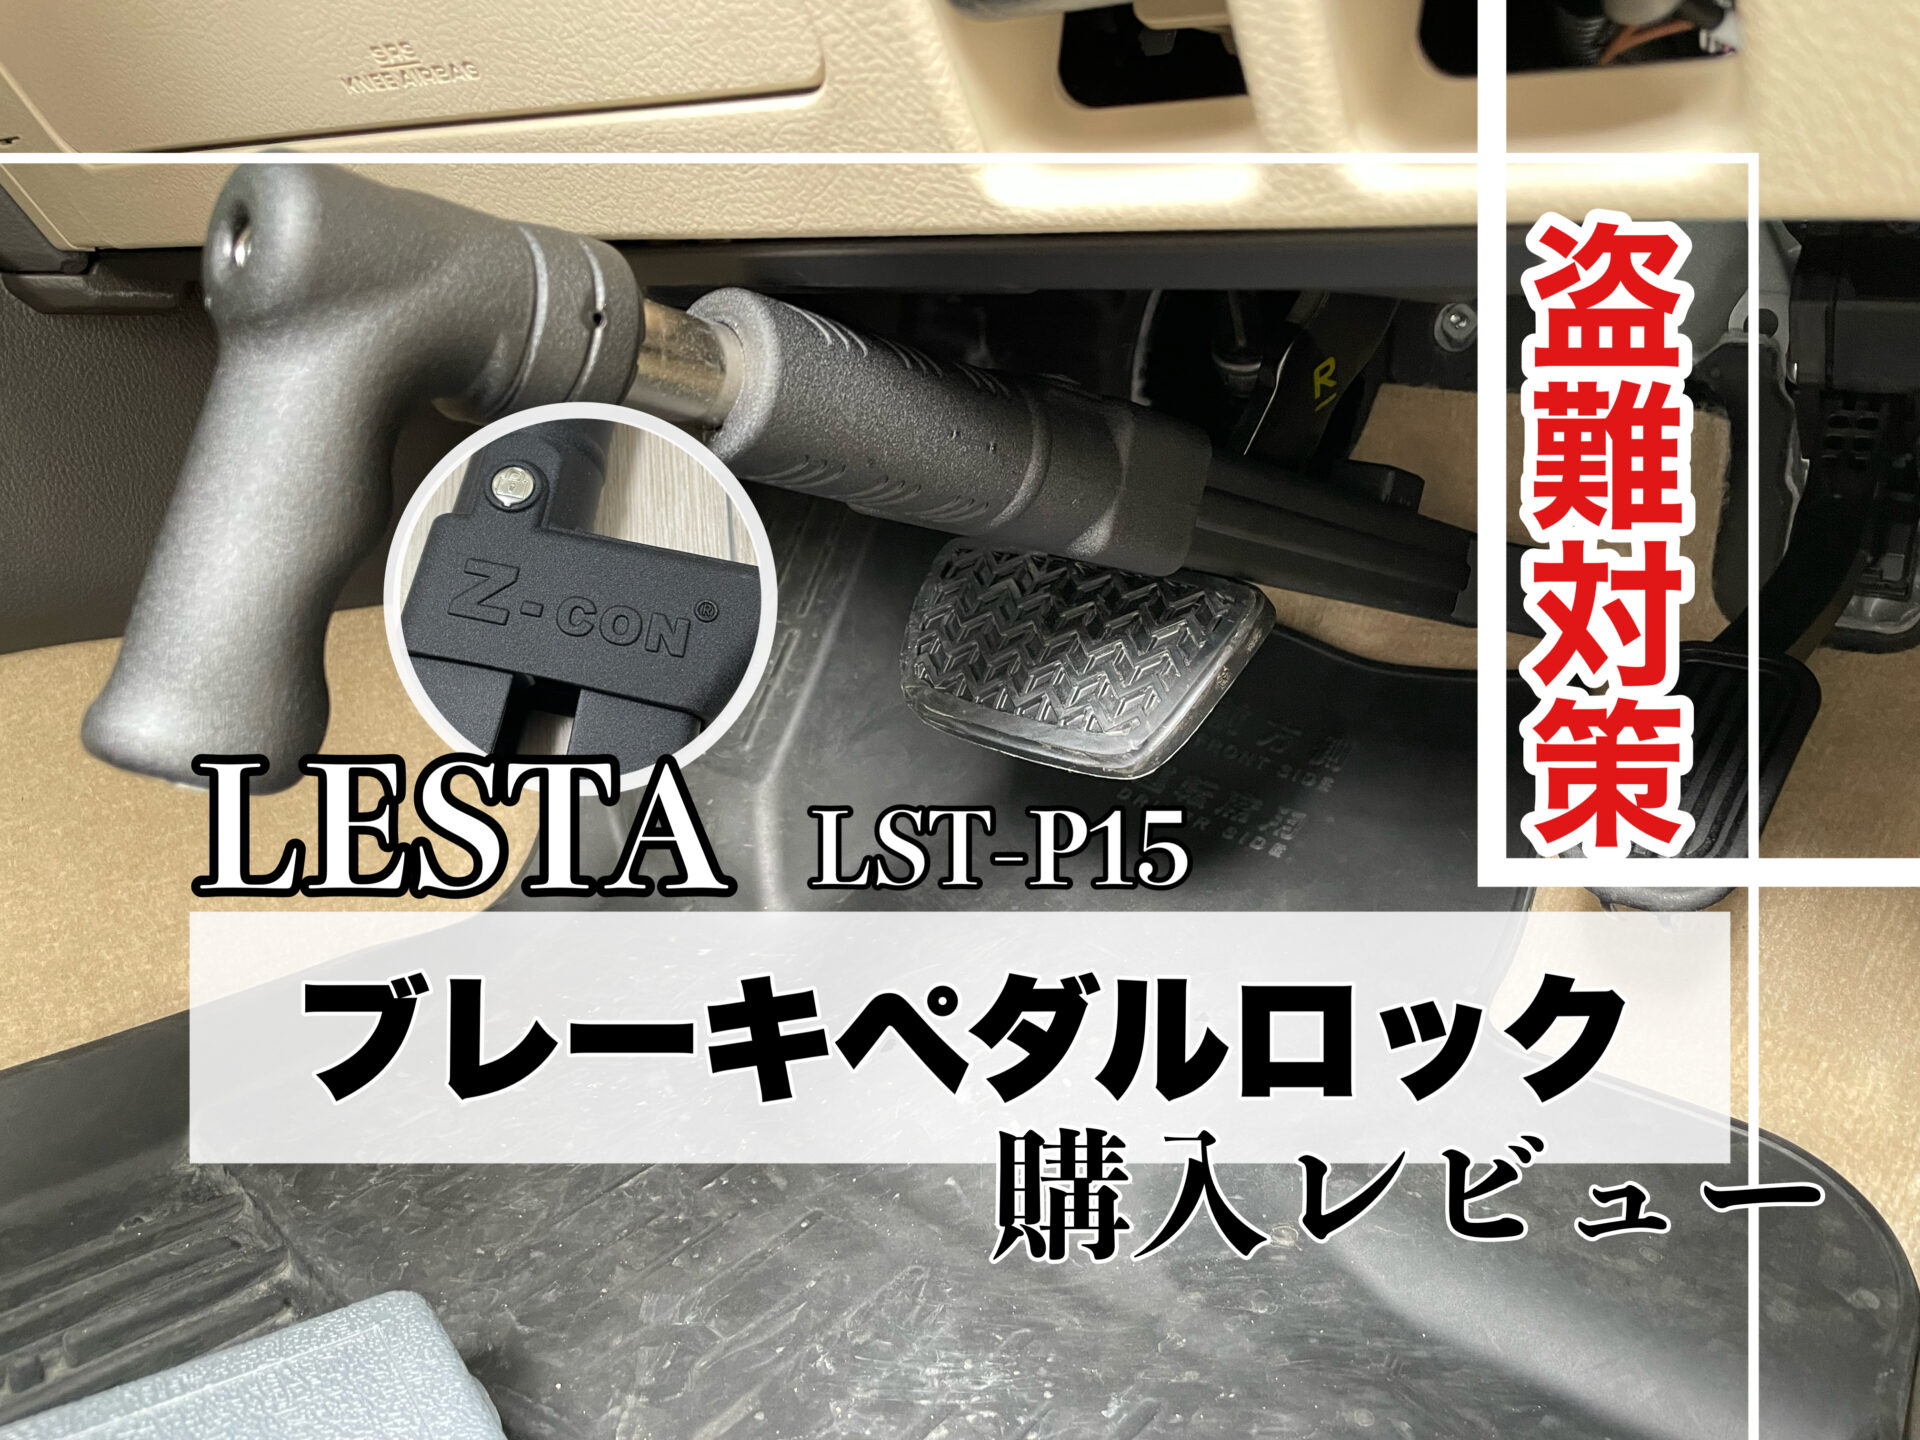 LESTA ブレーキペダルロック(LST-P15) Z-CON 購入レビュー 盗難対策に ...